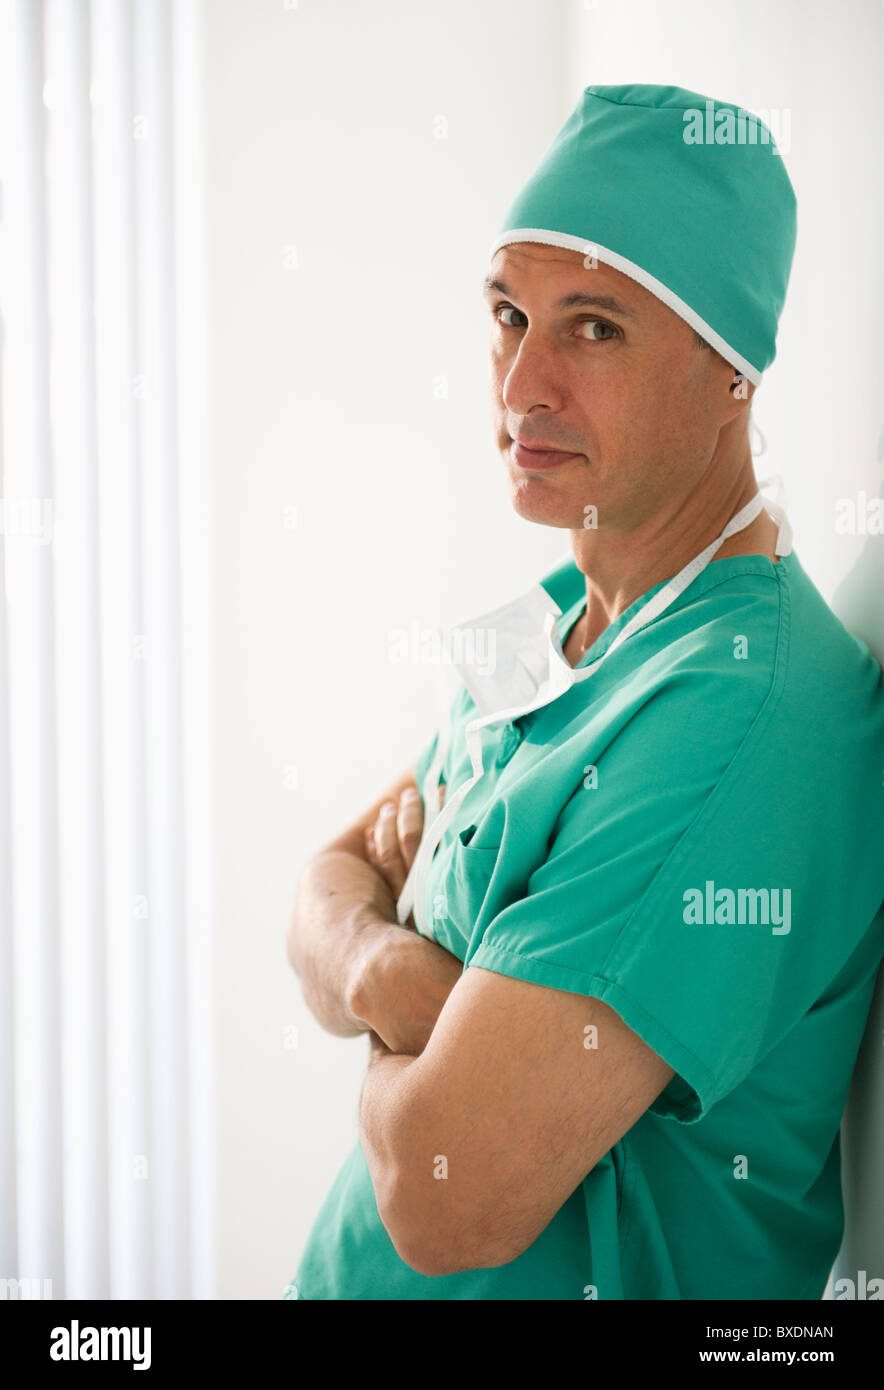 Surgeon wearing medical scrubs Stock Photo